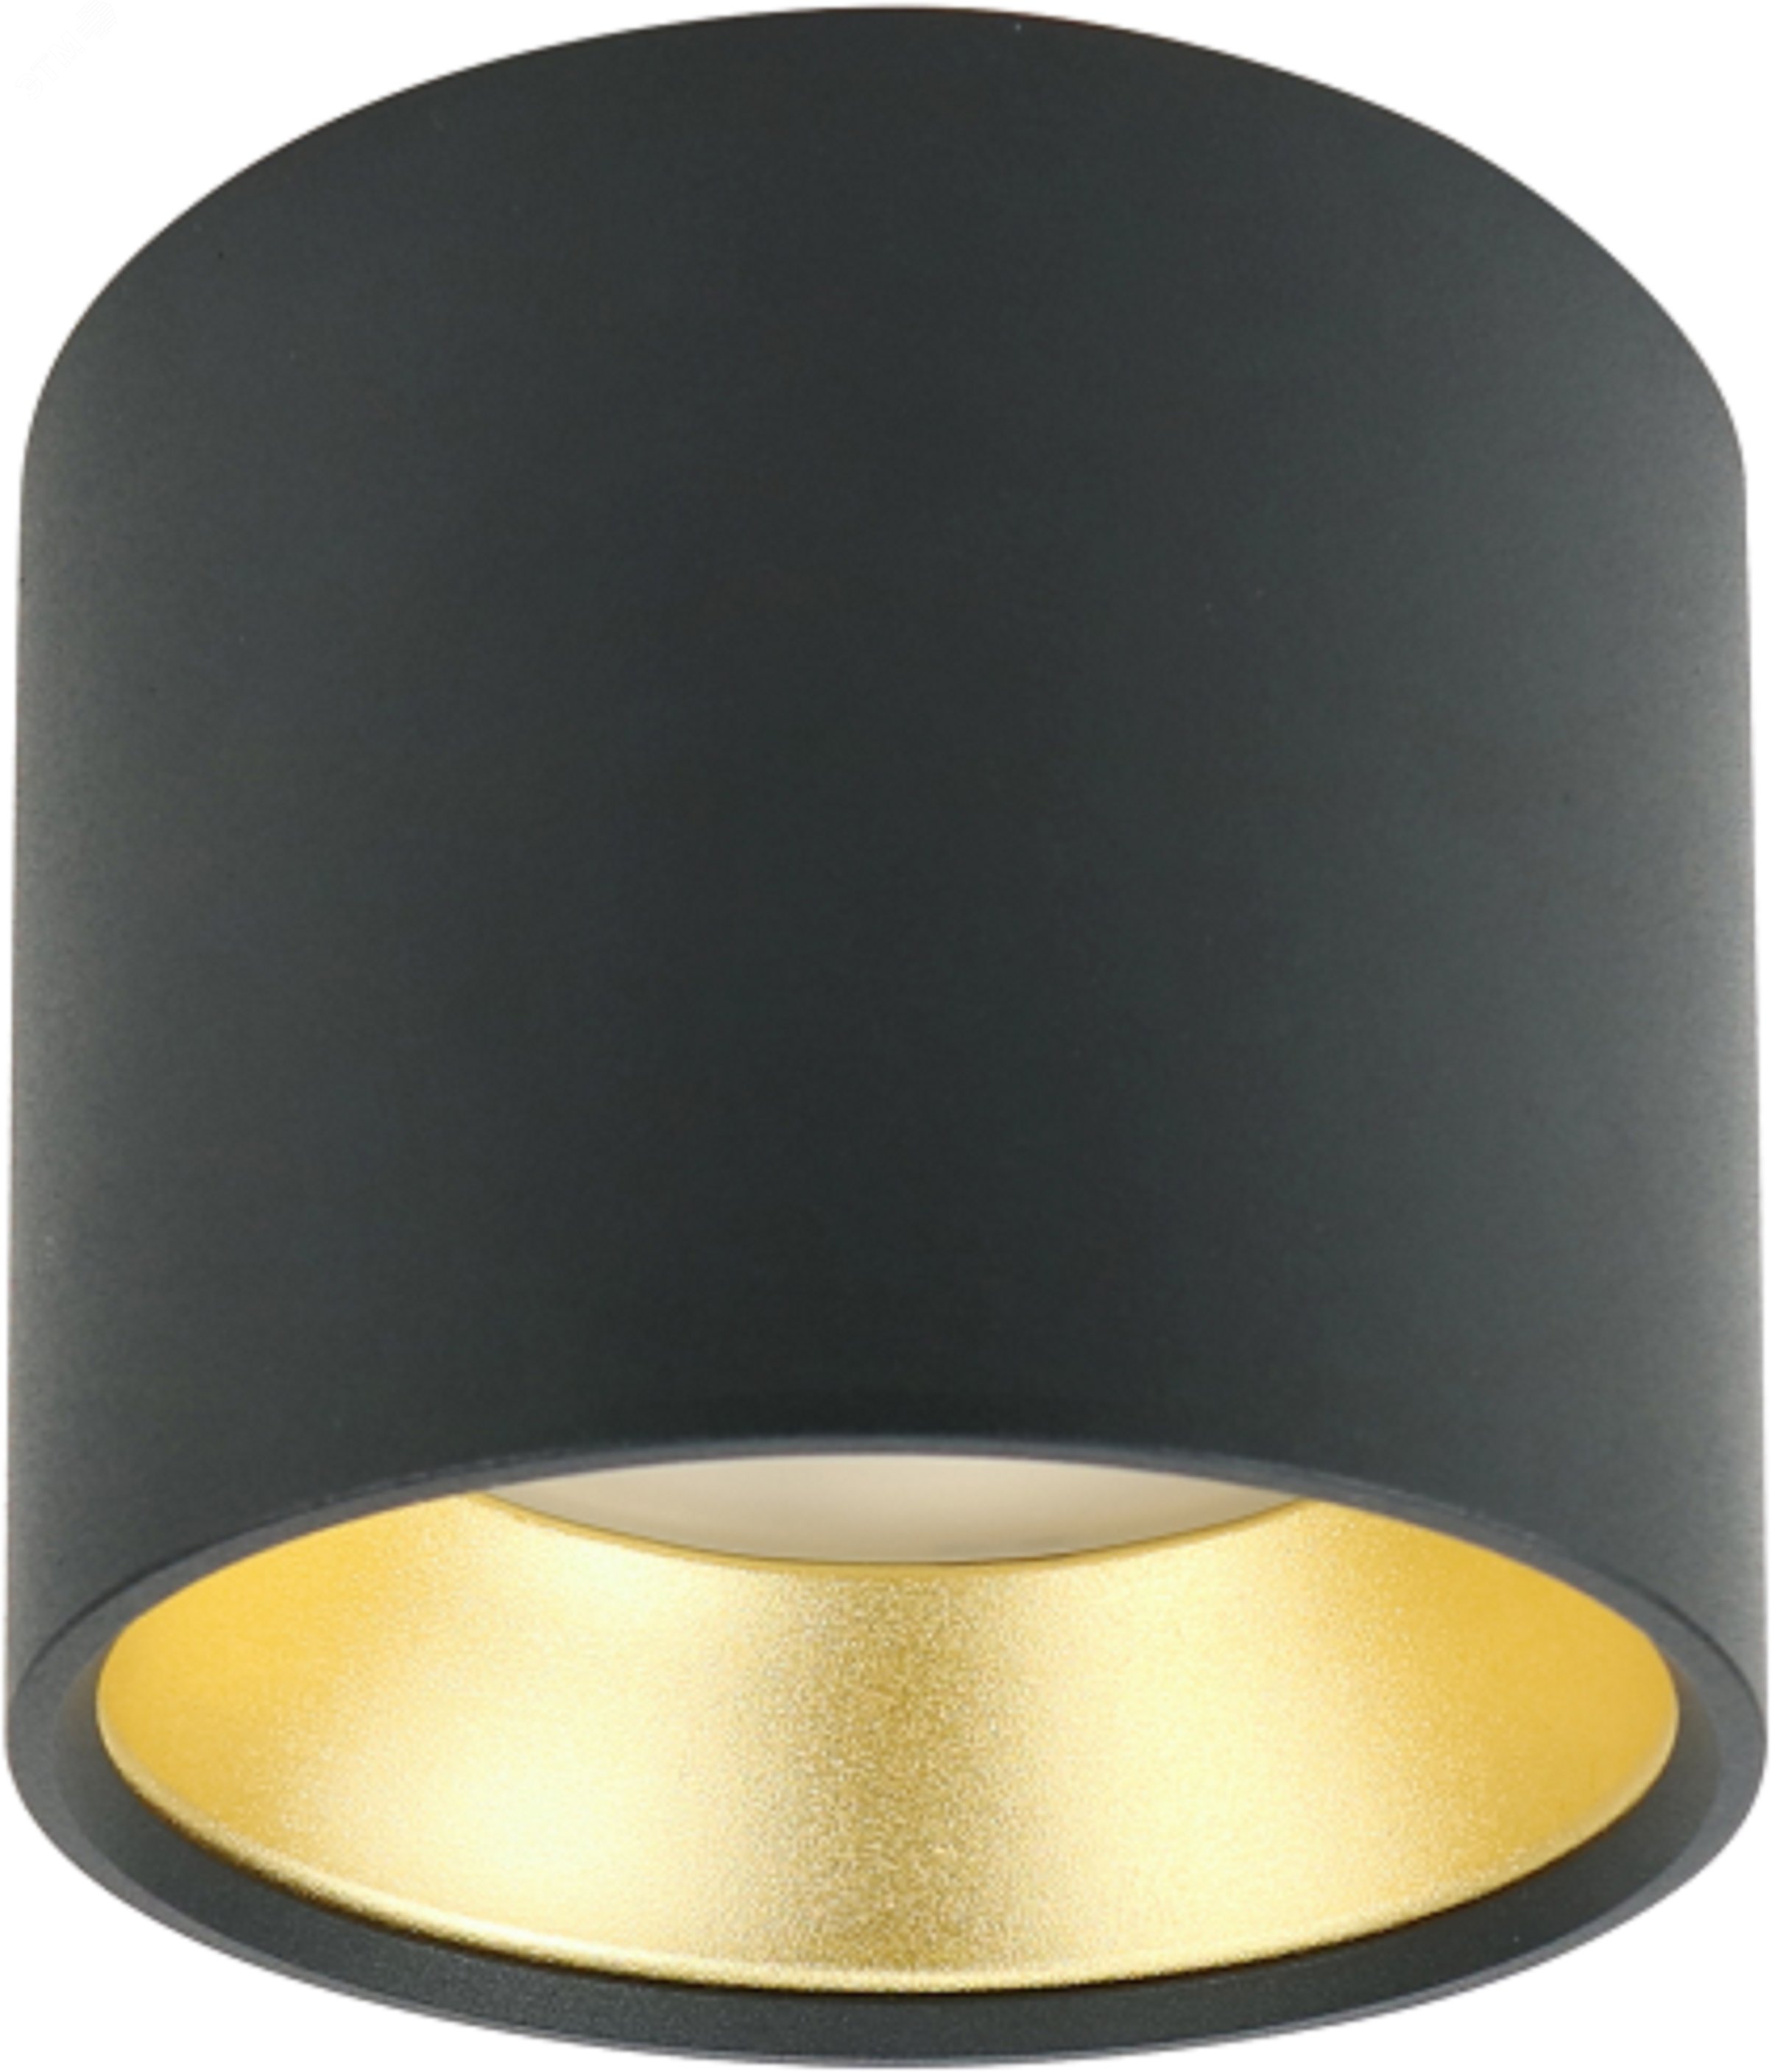 Подсветка Накладной под лампу Gx53, алюминий, цвет черный+золото OL8 GX53 BK/GD лампа с цоколем GX53 ( в комплект не входит) Б0048539 ЭРА